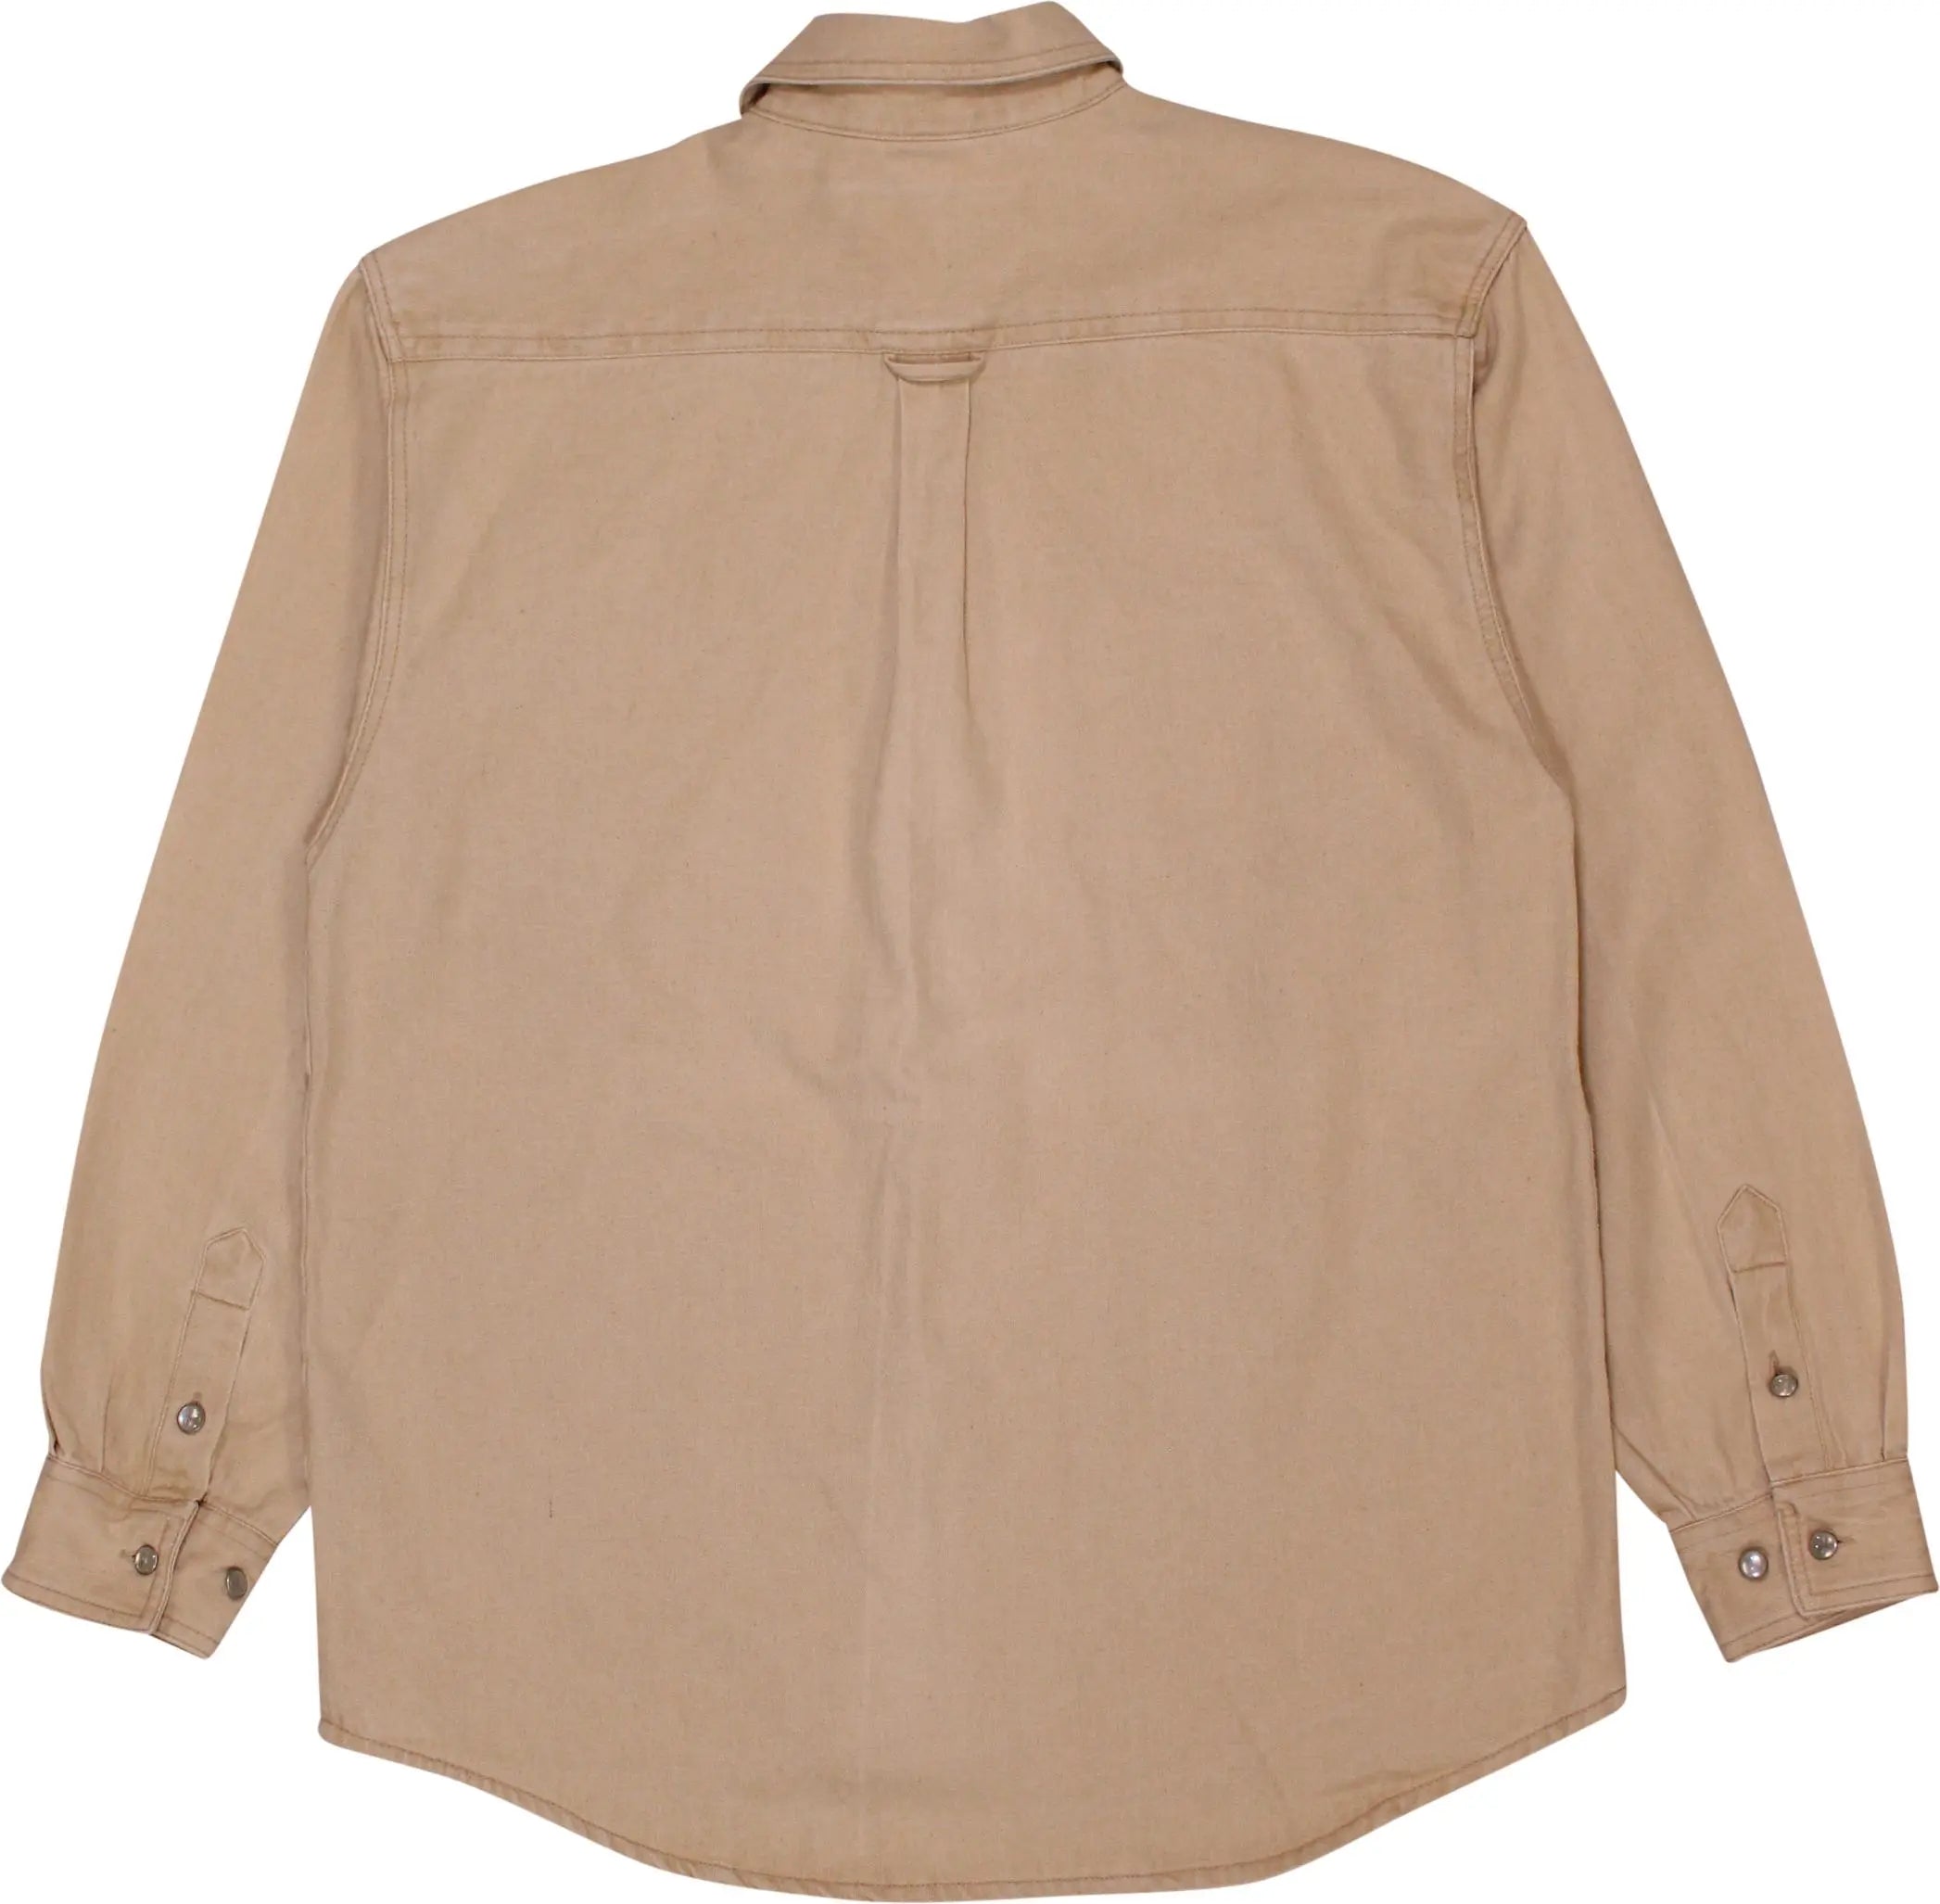 Formcula - Vintage Beige Denim Shirt- ThriftTale.com - Vintage and second handclothing